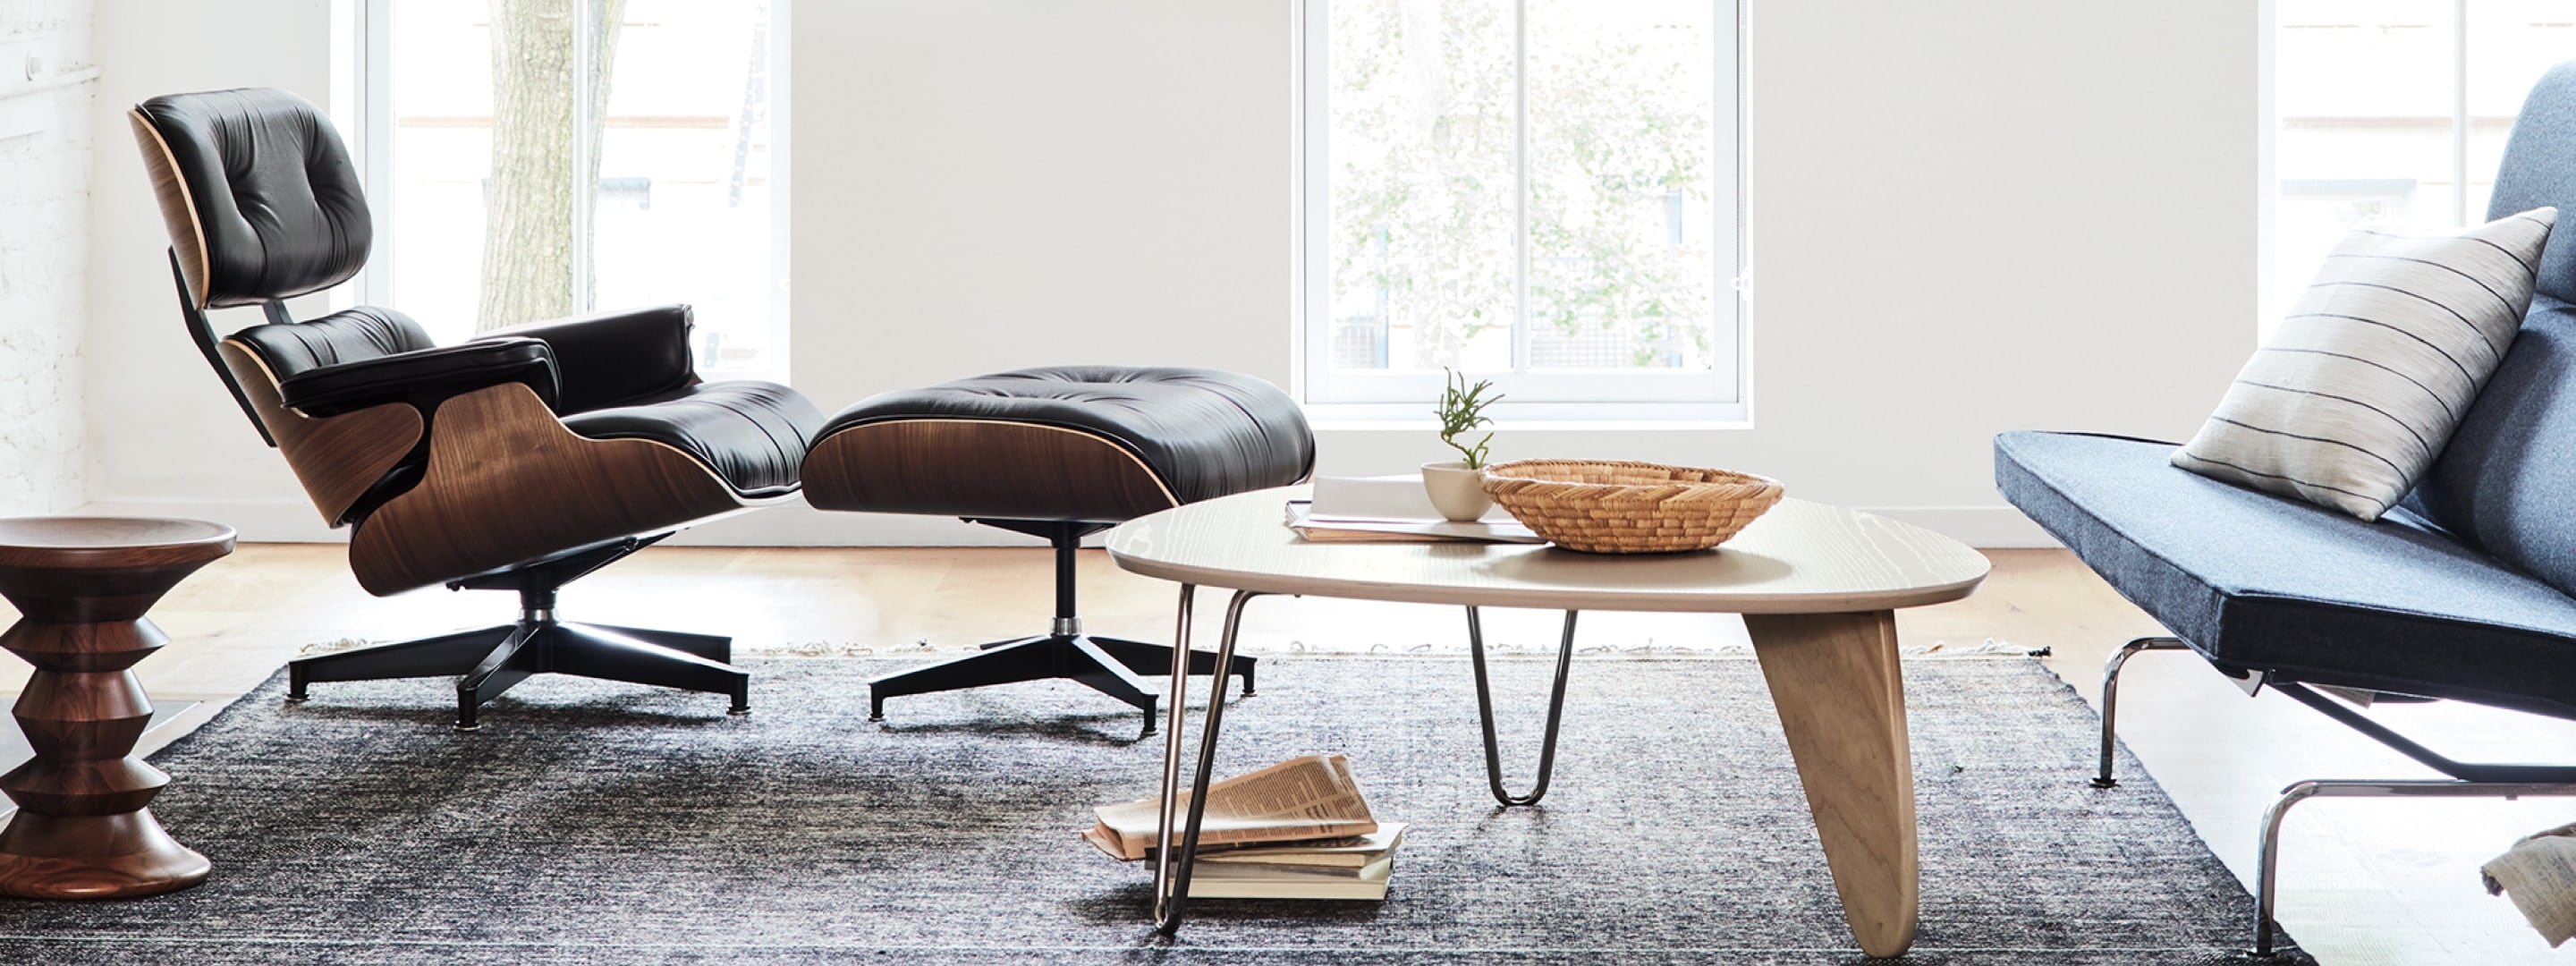 Uma Eames Lounge Chair e Otomana, uma mesa Noguchi Rudder, um sofá Eames Compact e uma banqueta Eames Walnut em uma sala de estar com grandes janelas ao fundo.